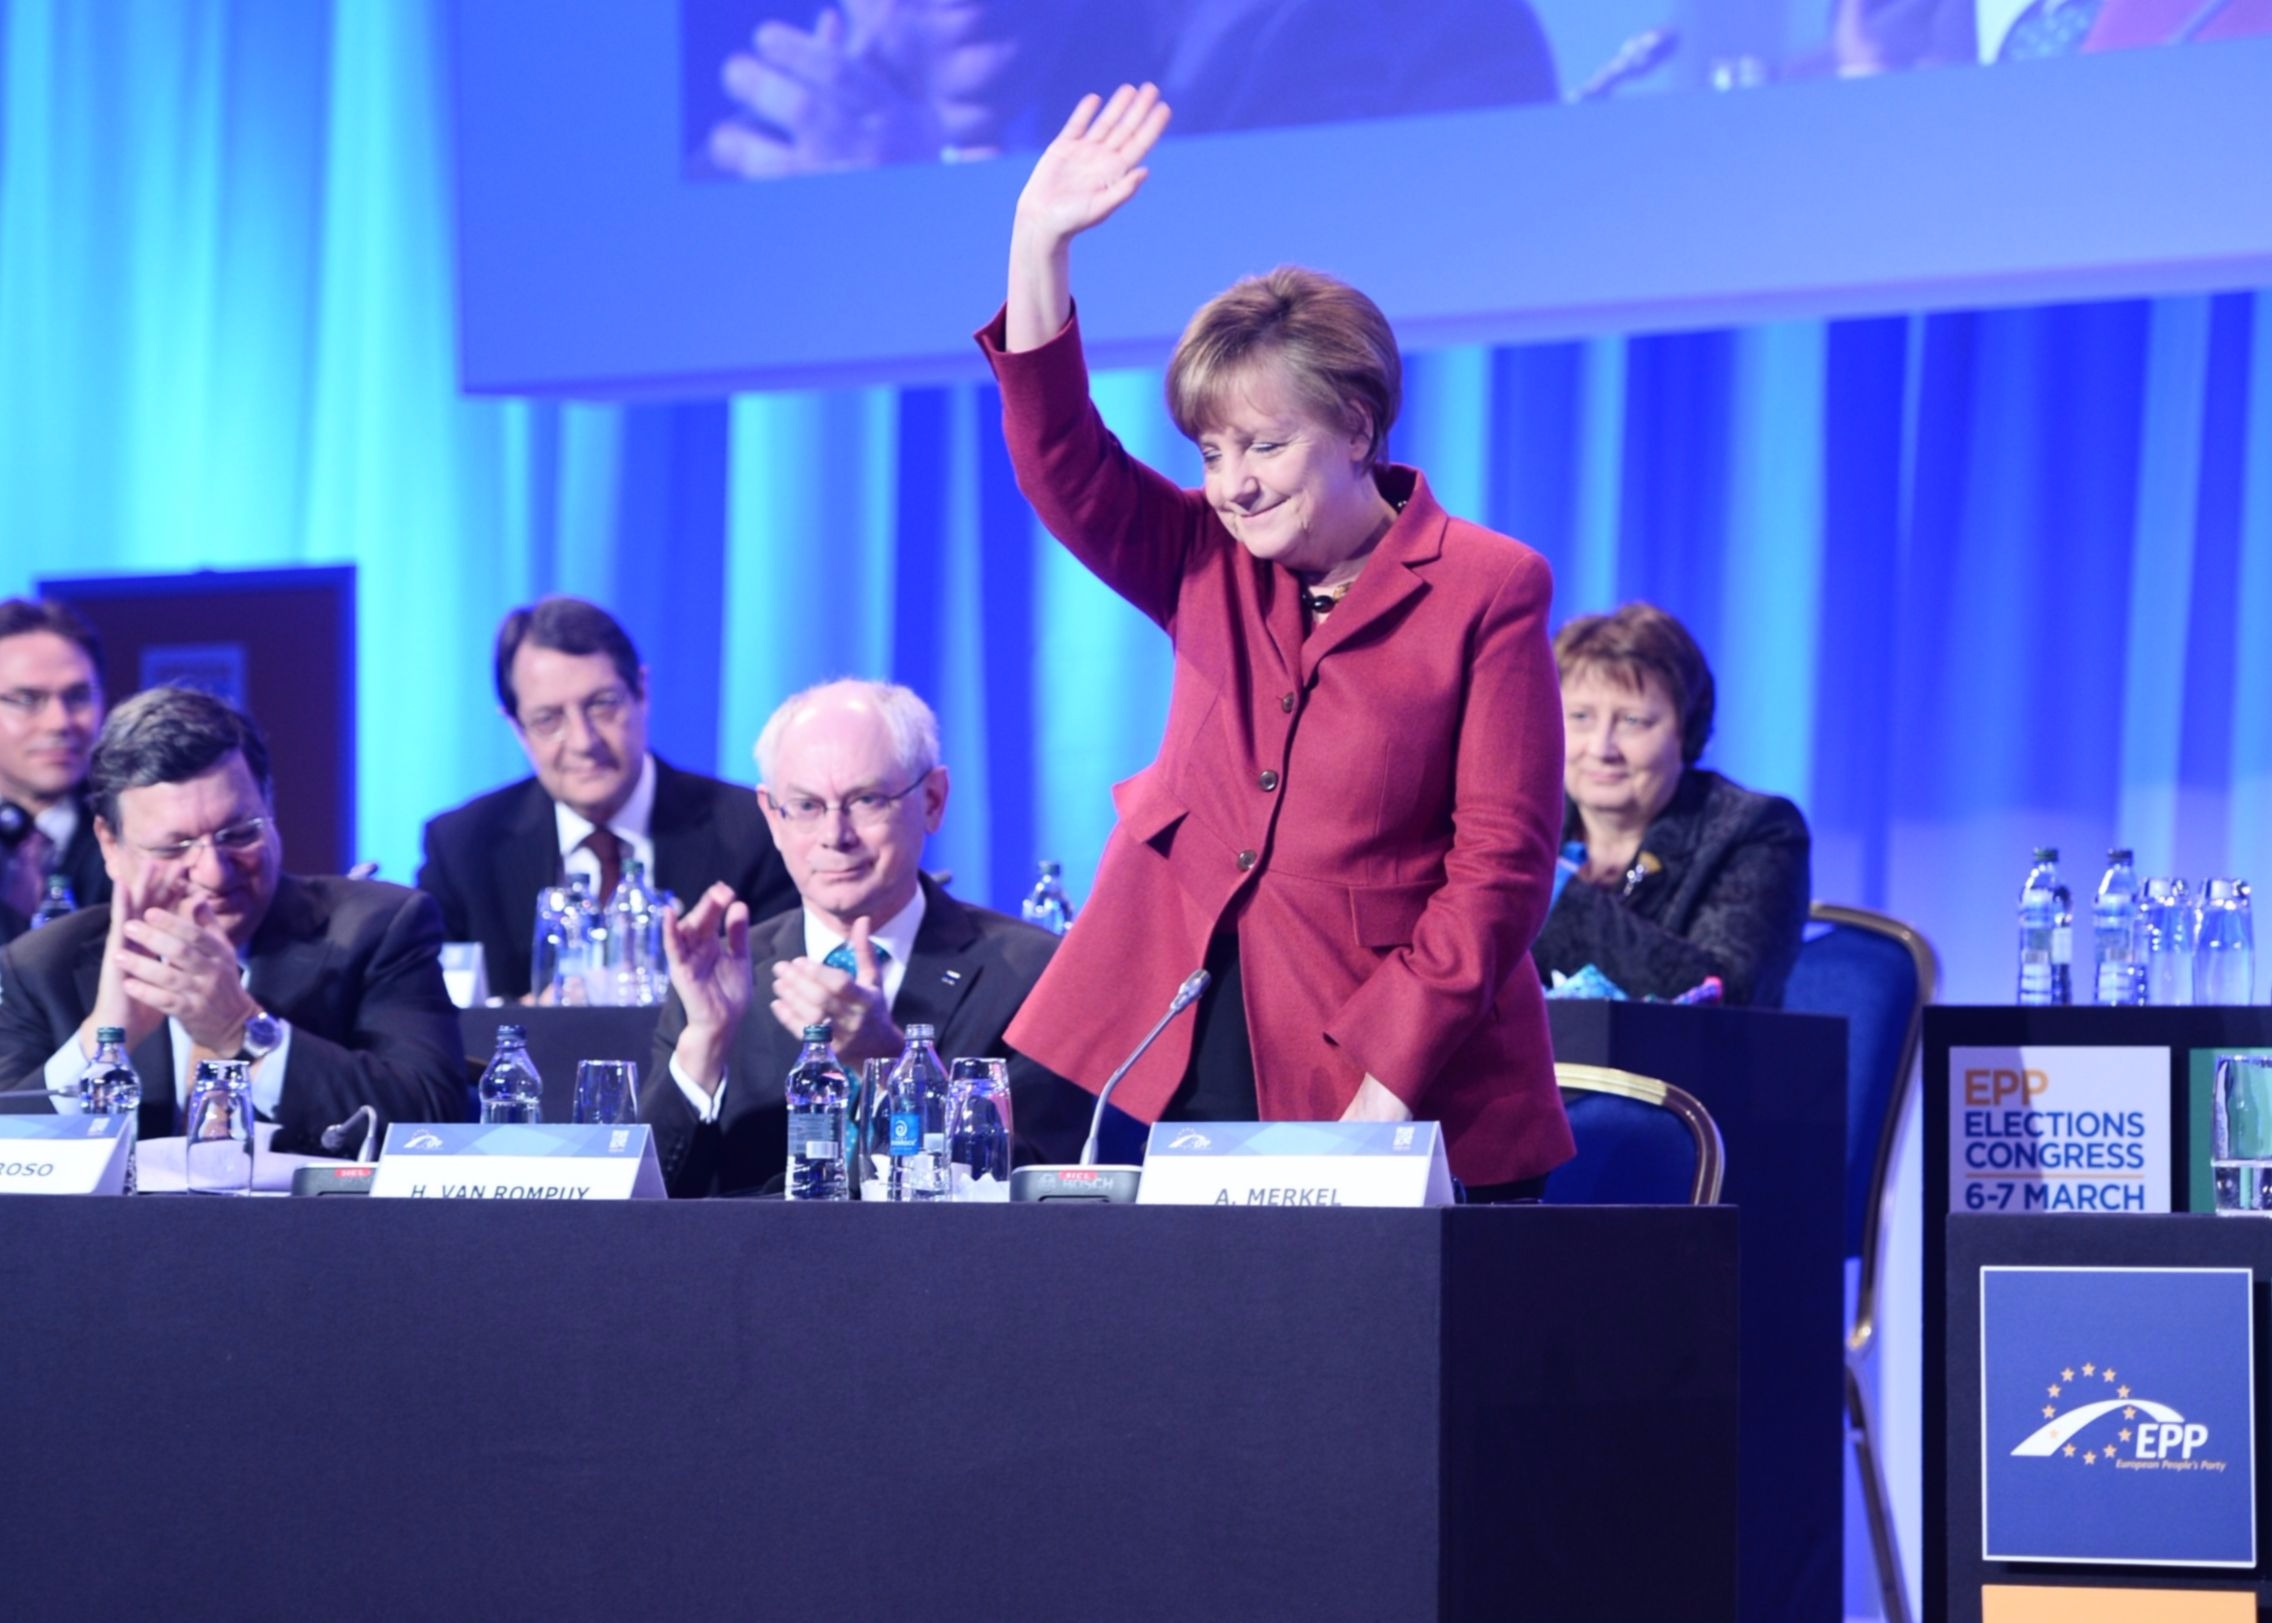 Politologai: A. Merkel pergalė reiškia politikos tęstinumą Lietuvos atžvilgiu [Komentuoja K. Girnius ir R. Vilpišauskas]